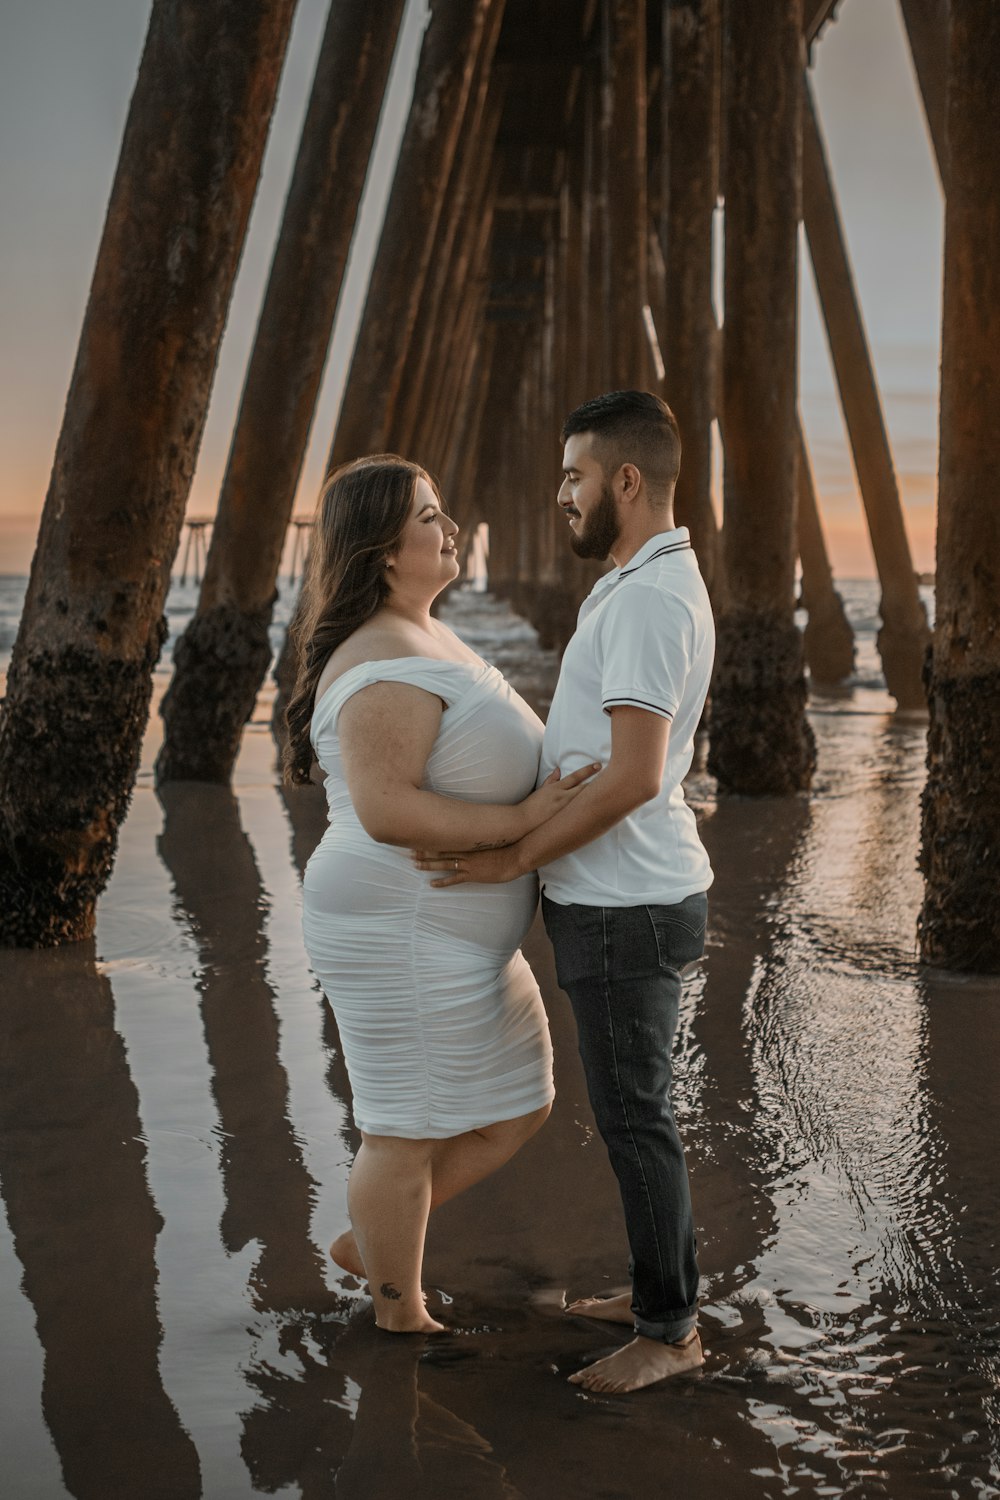 夕暮れ時に桟橋の下に立つ妊娠中の夫婦